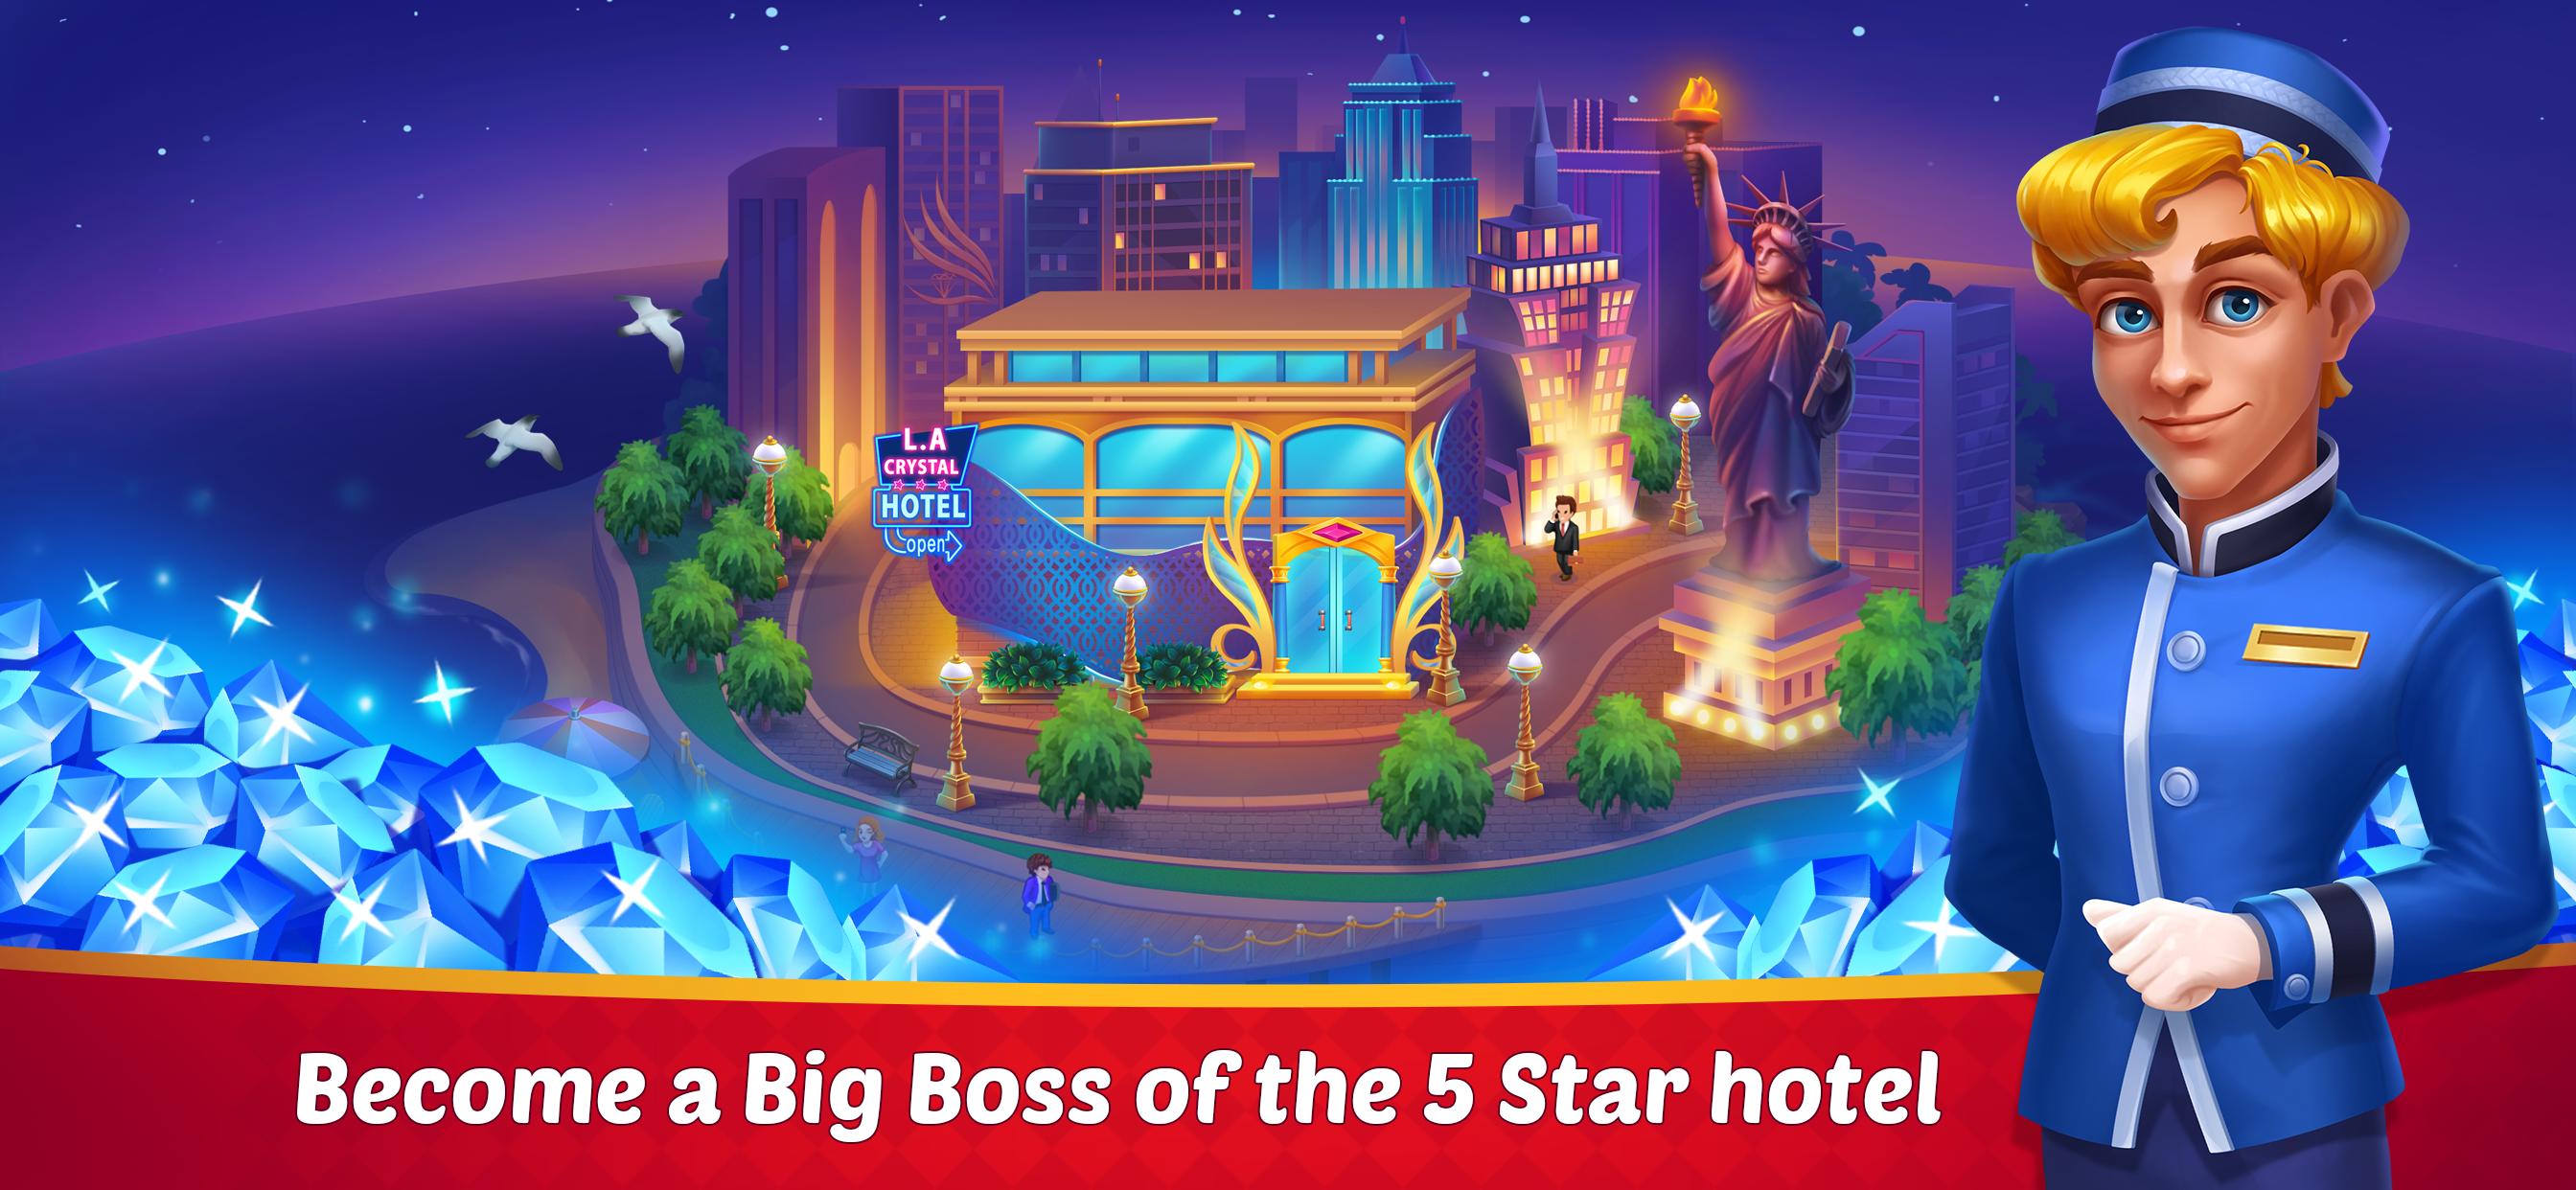 Dream Hotel: 호텔 게임, 호텔 매니저, 시뮬레이션 게임